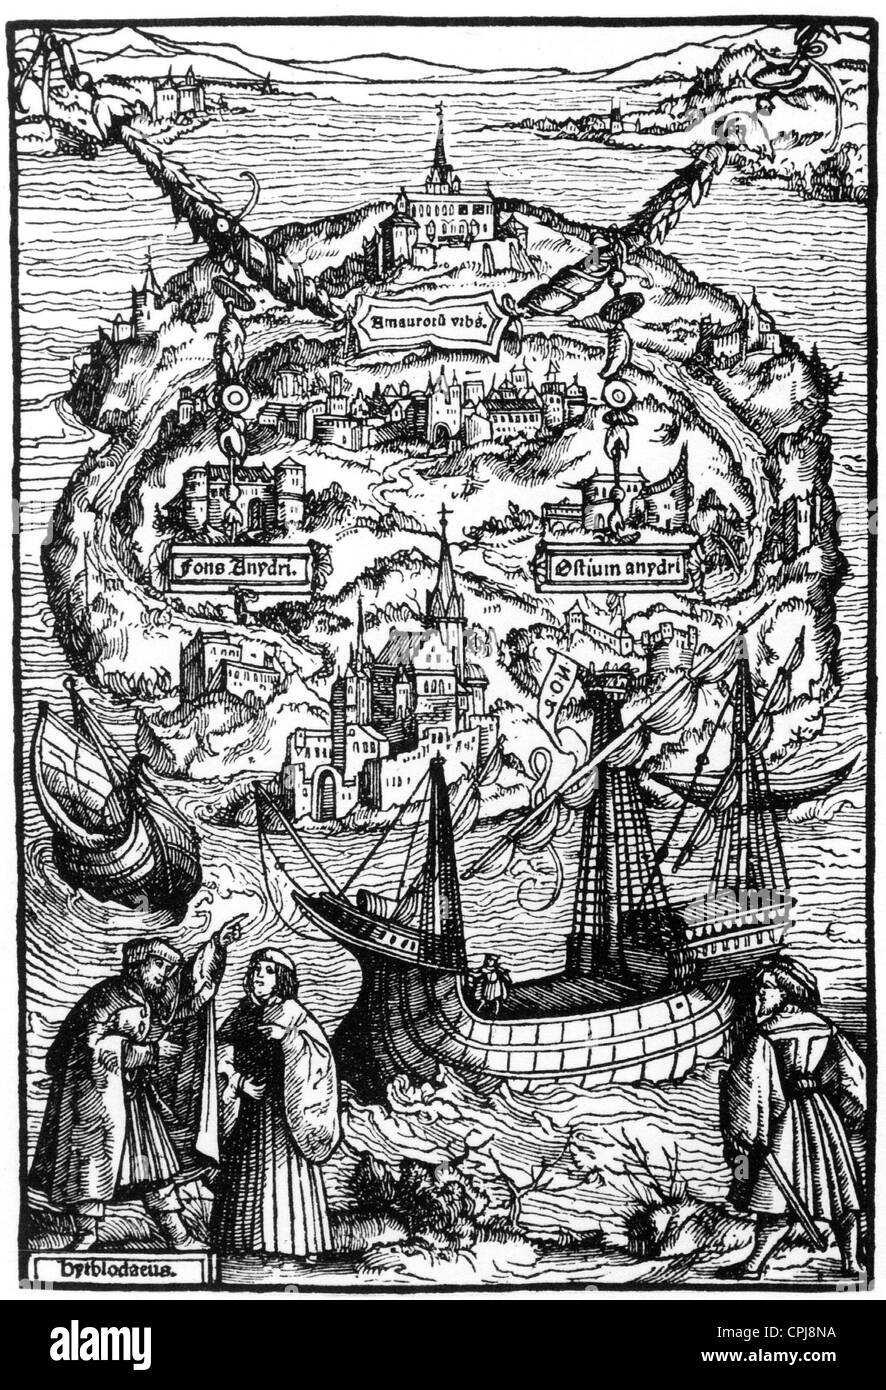 Titelholzschnitt Zu Dem Buch "Utopie", 1516 Stockfoto